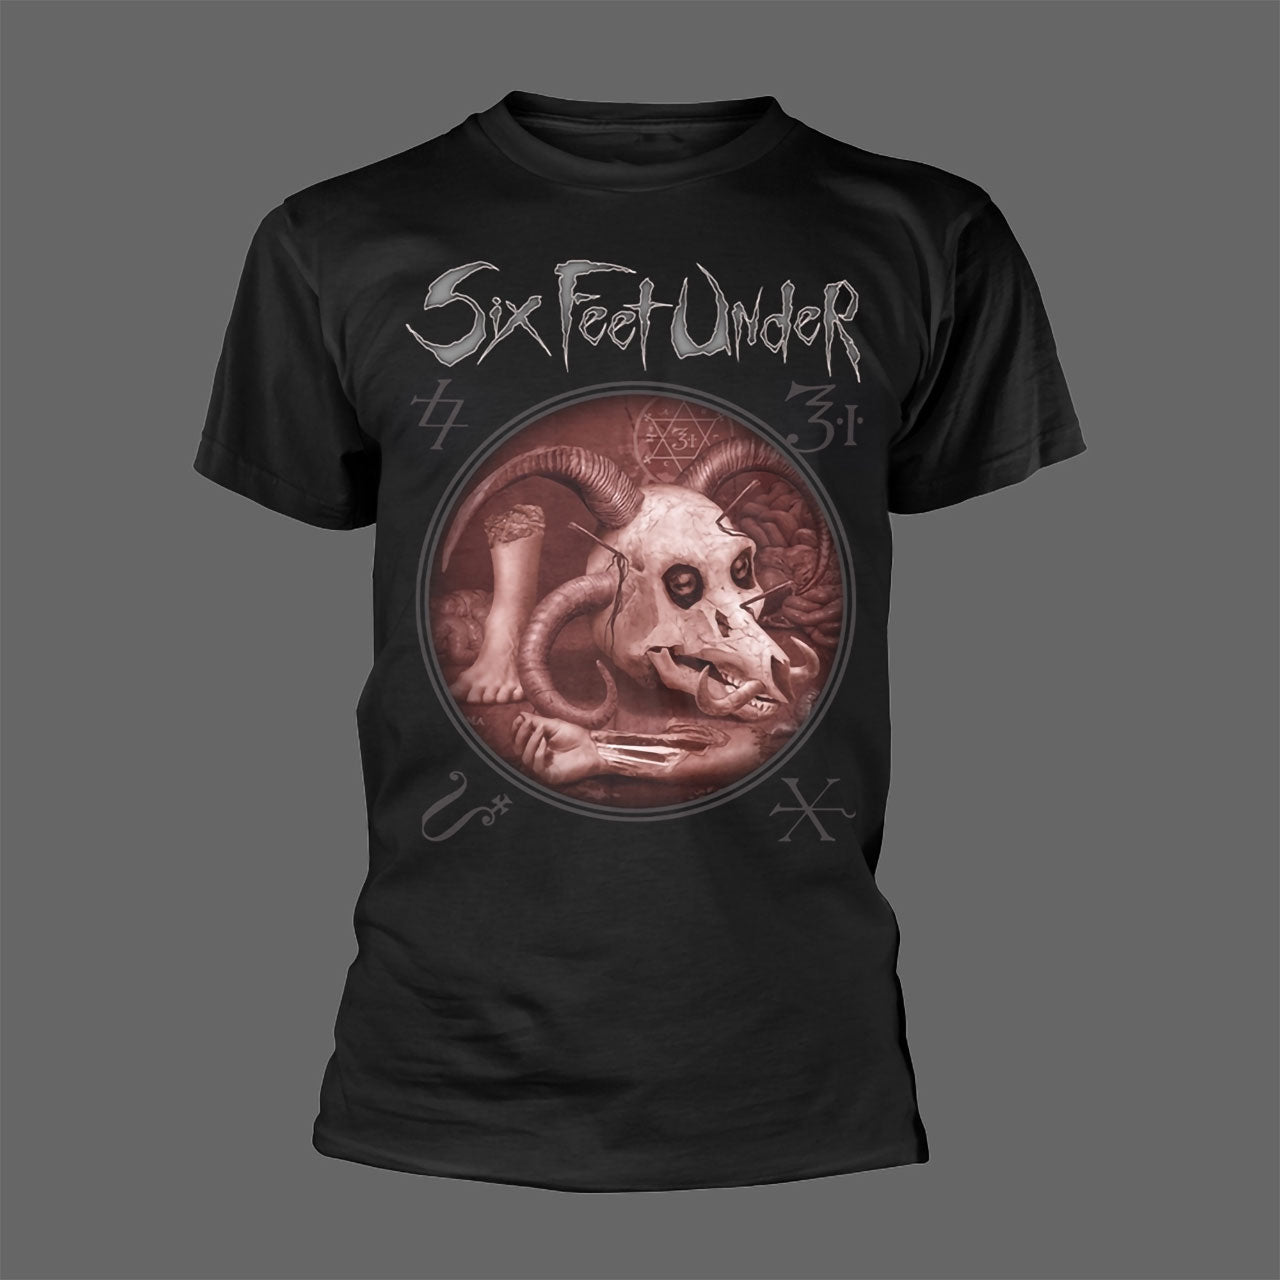 Six Feet Under - Euro Tour (T-Shirt)